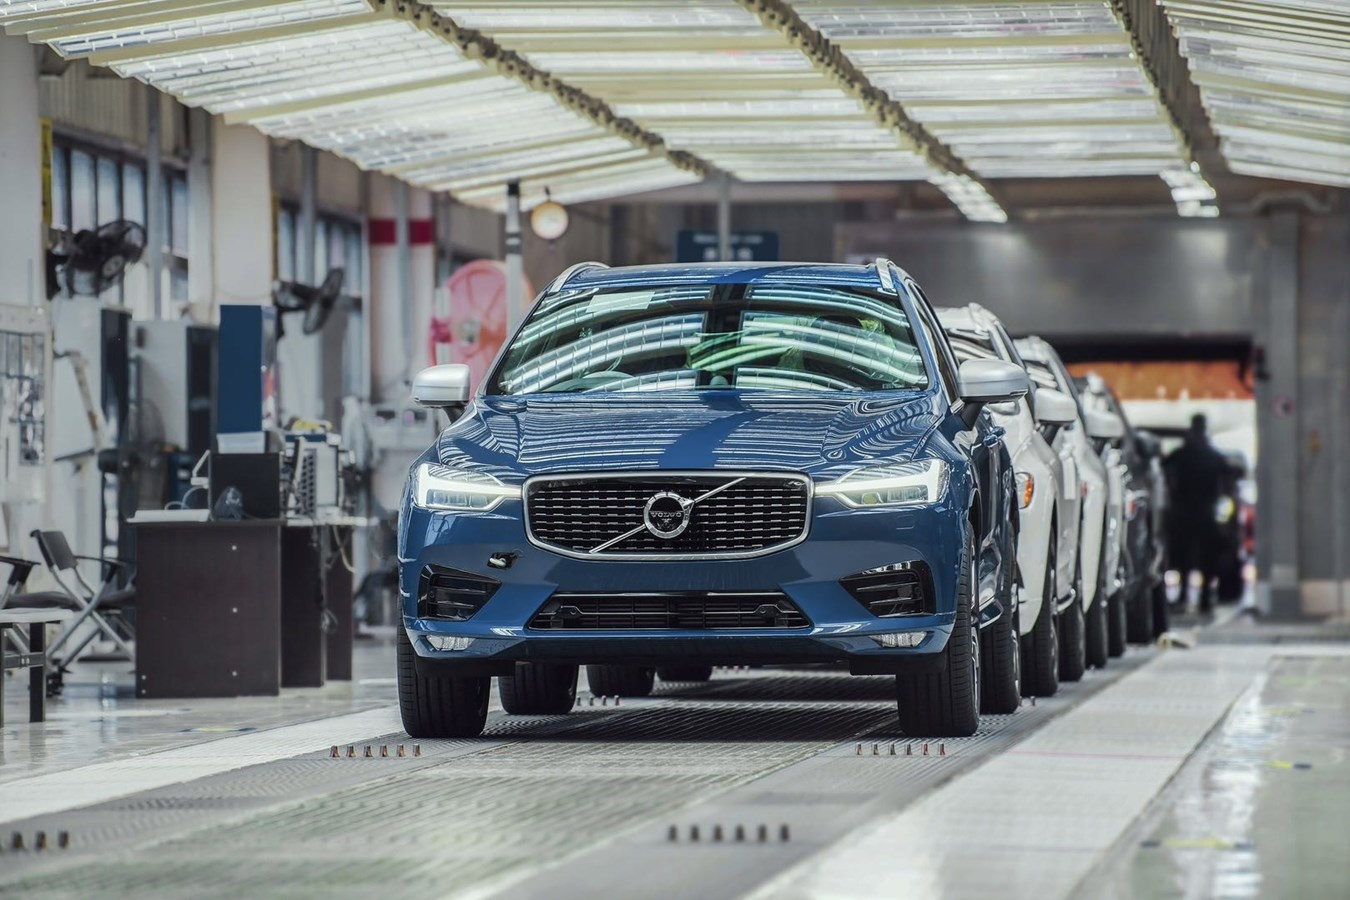 Le prime Volvo XC60 arrivano in Europa attraverso la nuova via della seta